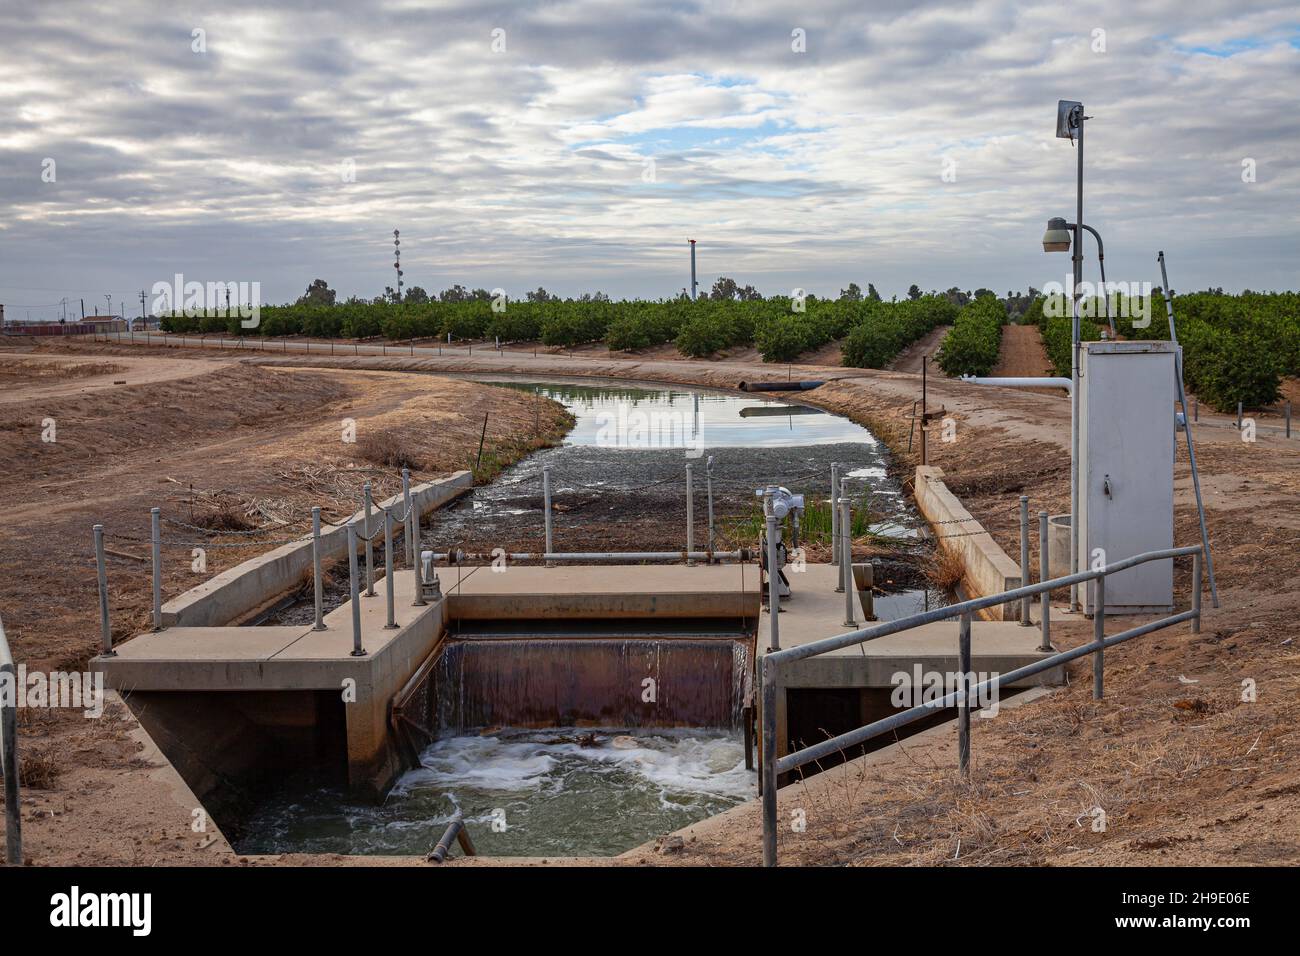 Der Covelo Water District mischte Ölfeld-Abwasser mit anderen Wasserquellen für lokale Bauern, um ihre Kulturen zu bewässern, Kern County, Kalifornien, USA Stockfoto